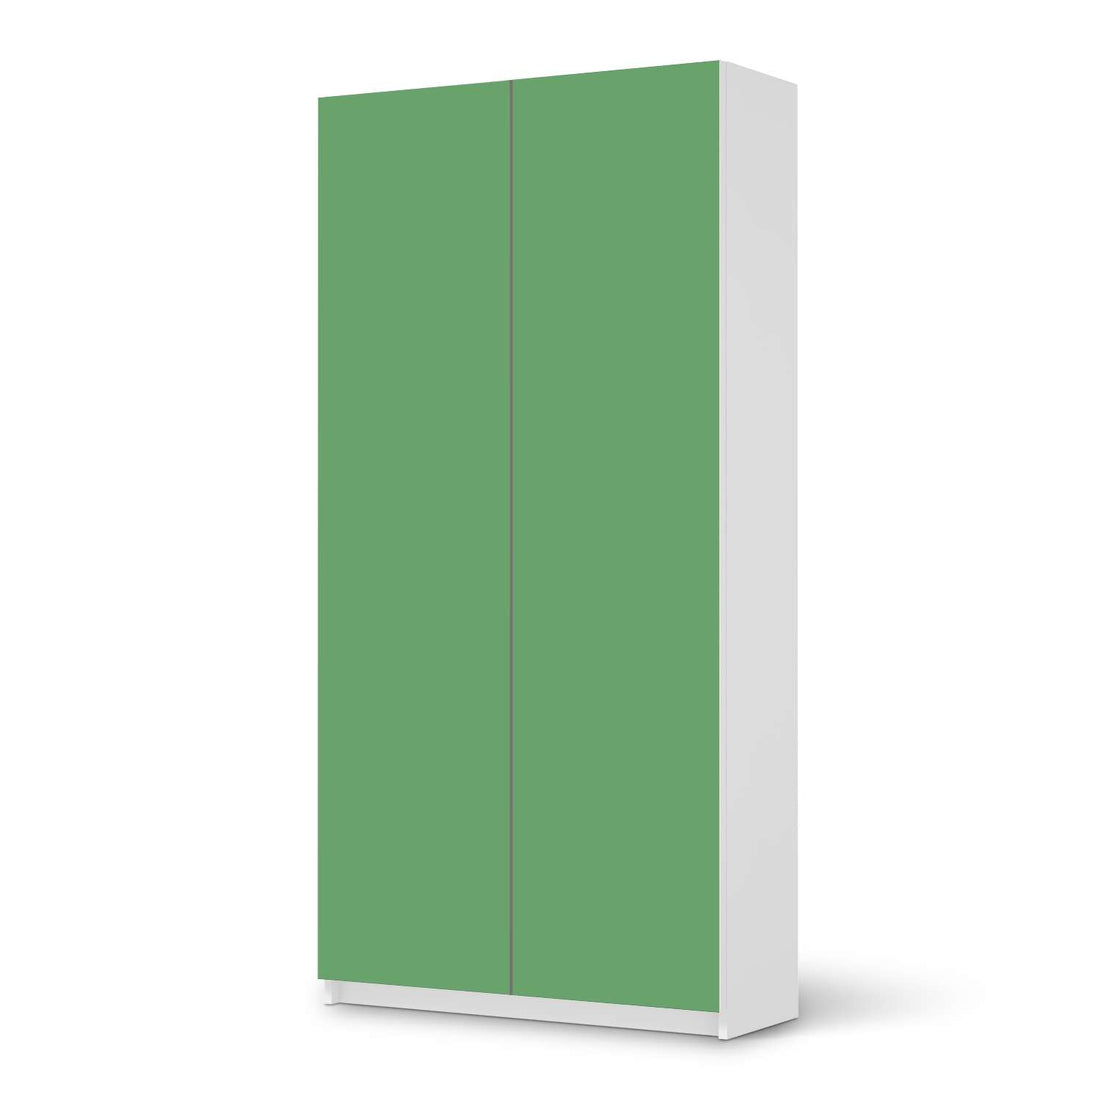 Klebefolie für Möbel Grün Light - IKEA Pax Schrank 201 cm Höhe - 2 Türen - weiss